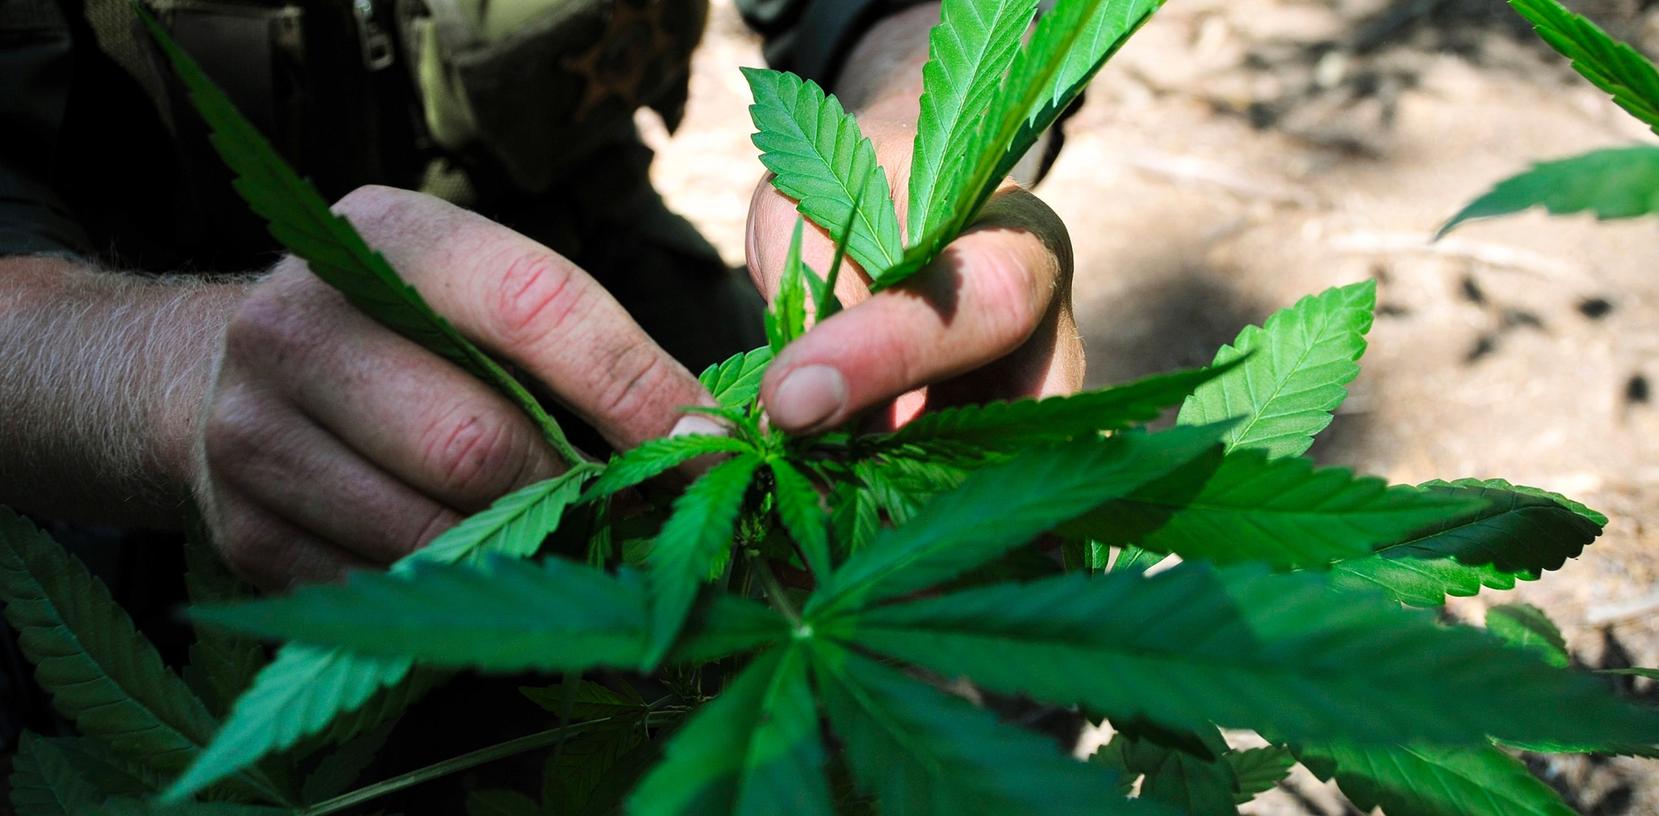 Ist Marihuana leicht mit Petersilie zu verwechseln? Aussagen vor Gericht widersprachen sich.